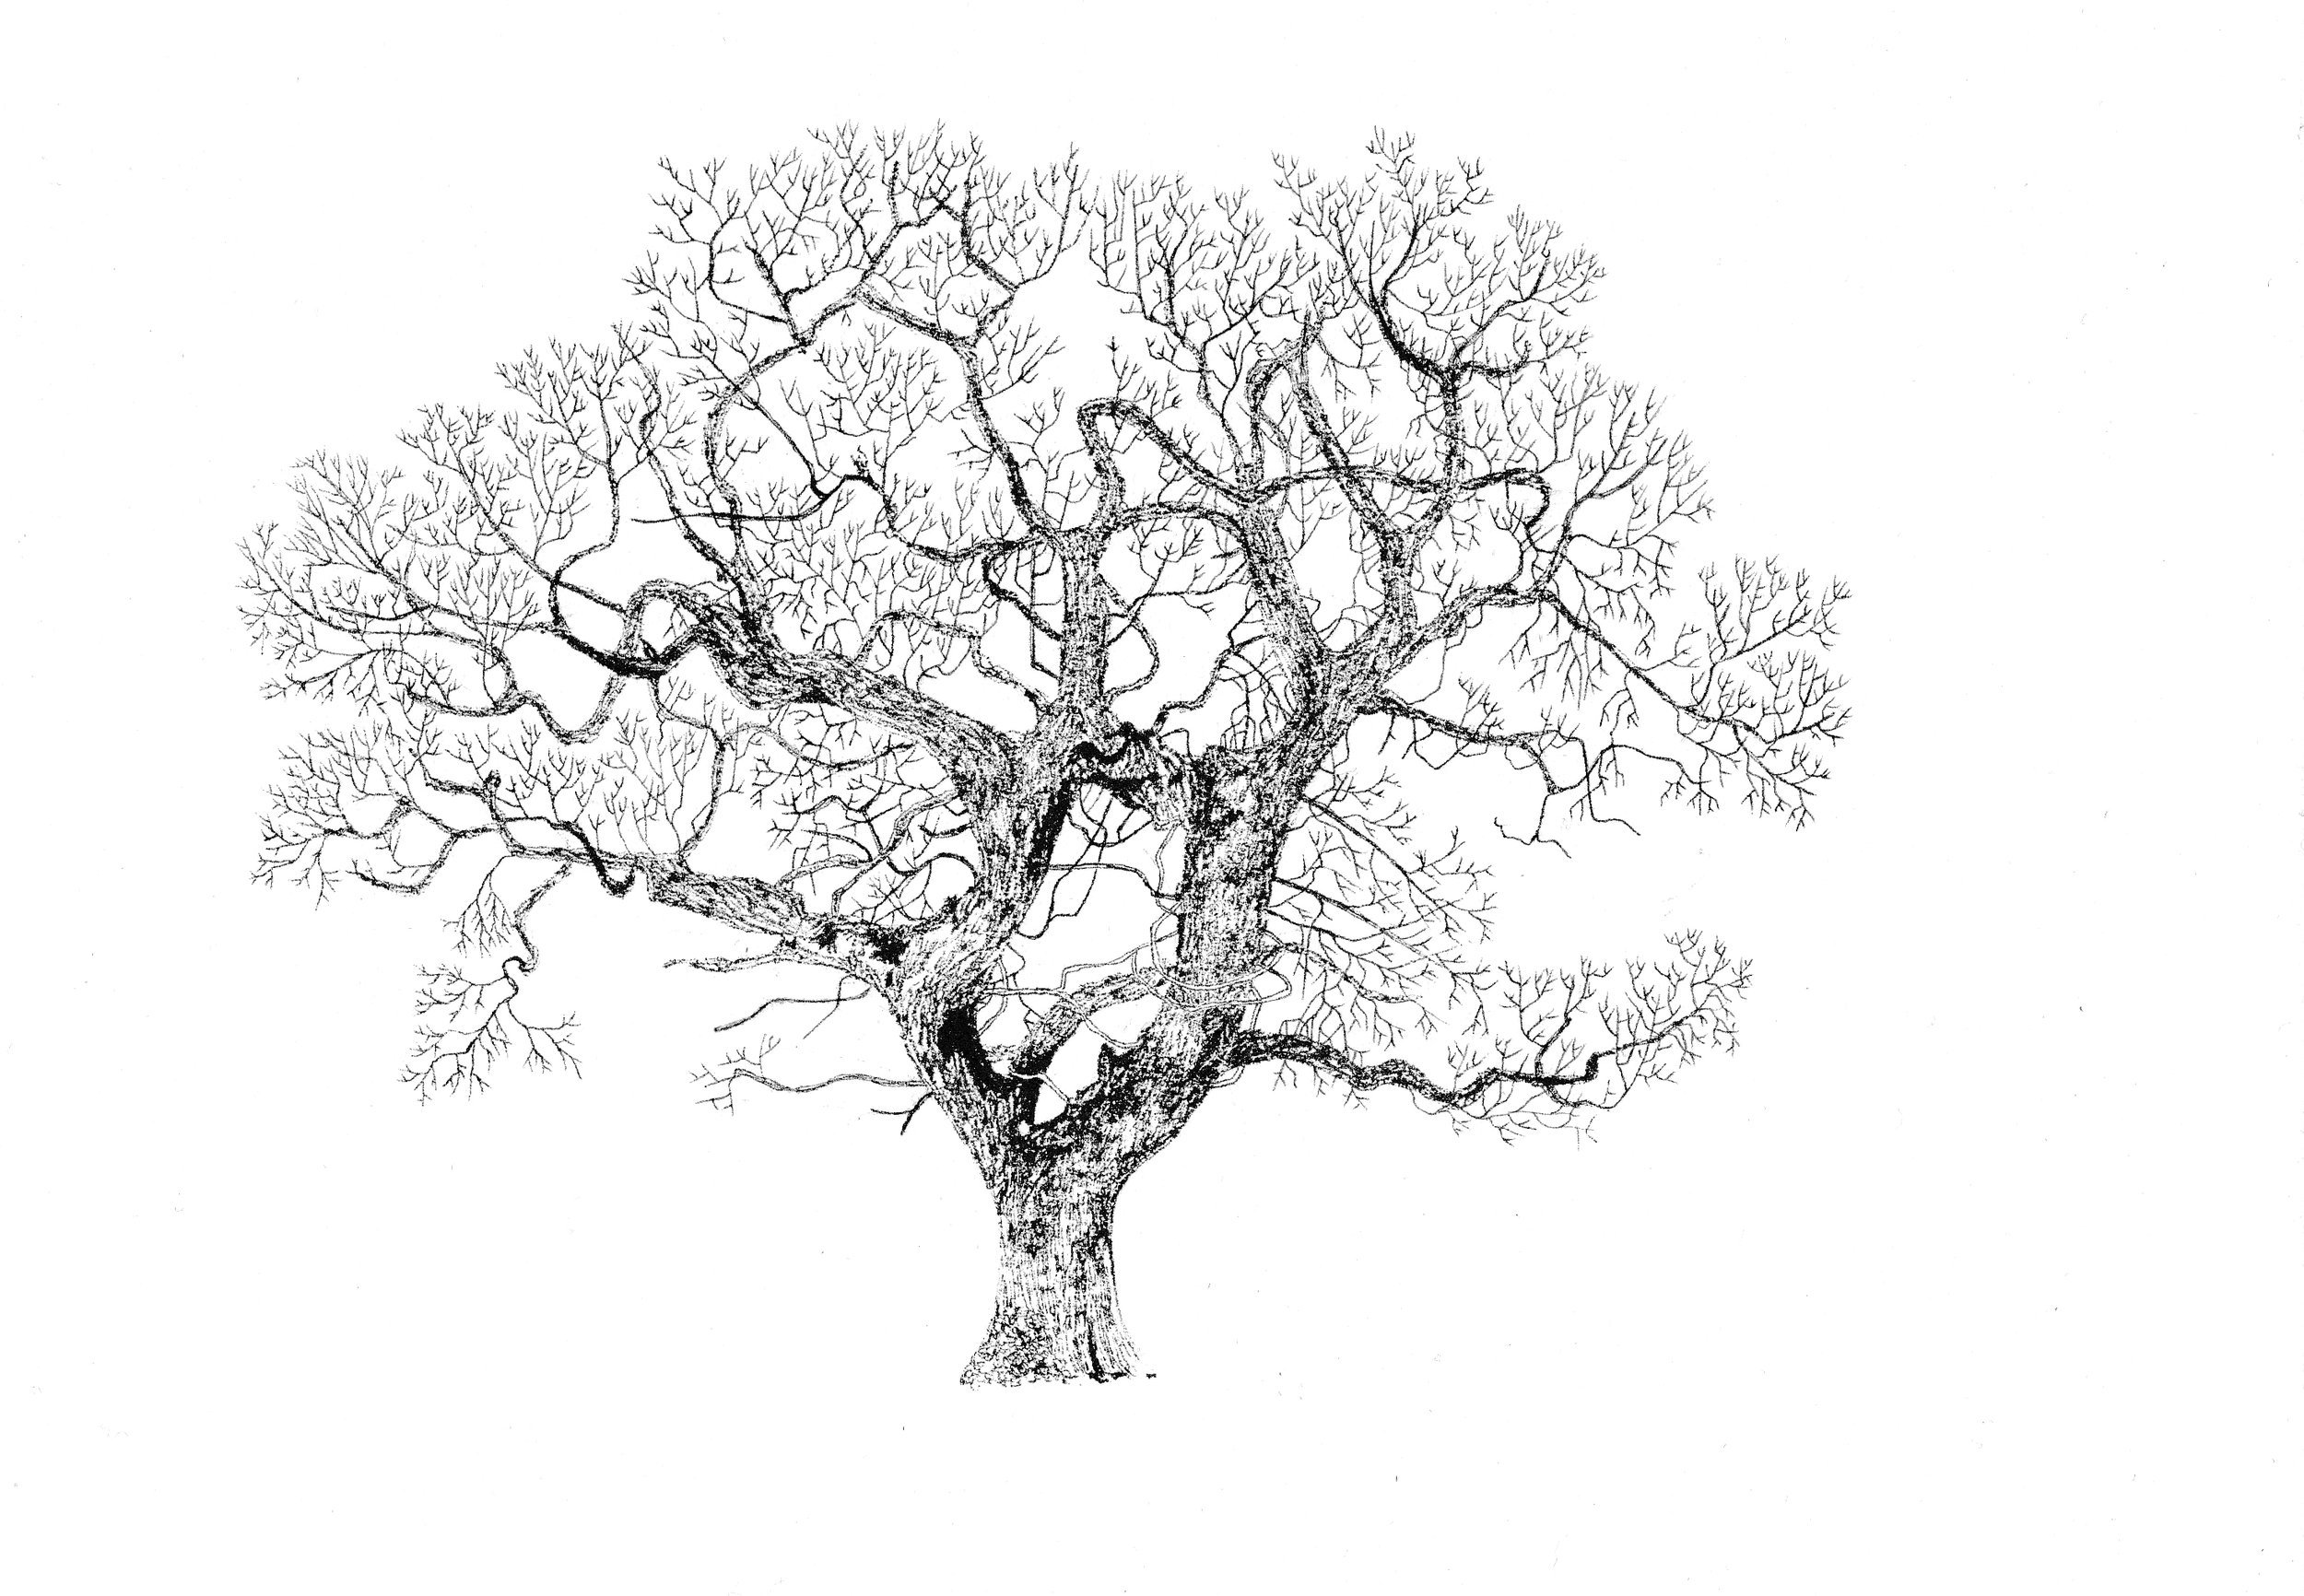 Графический рисунок дерева